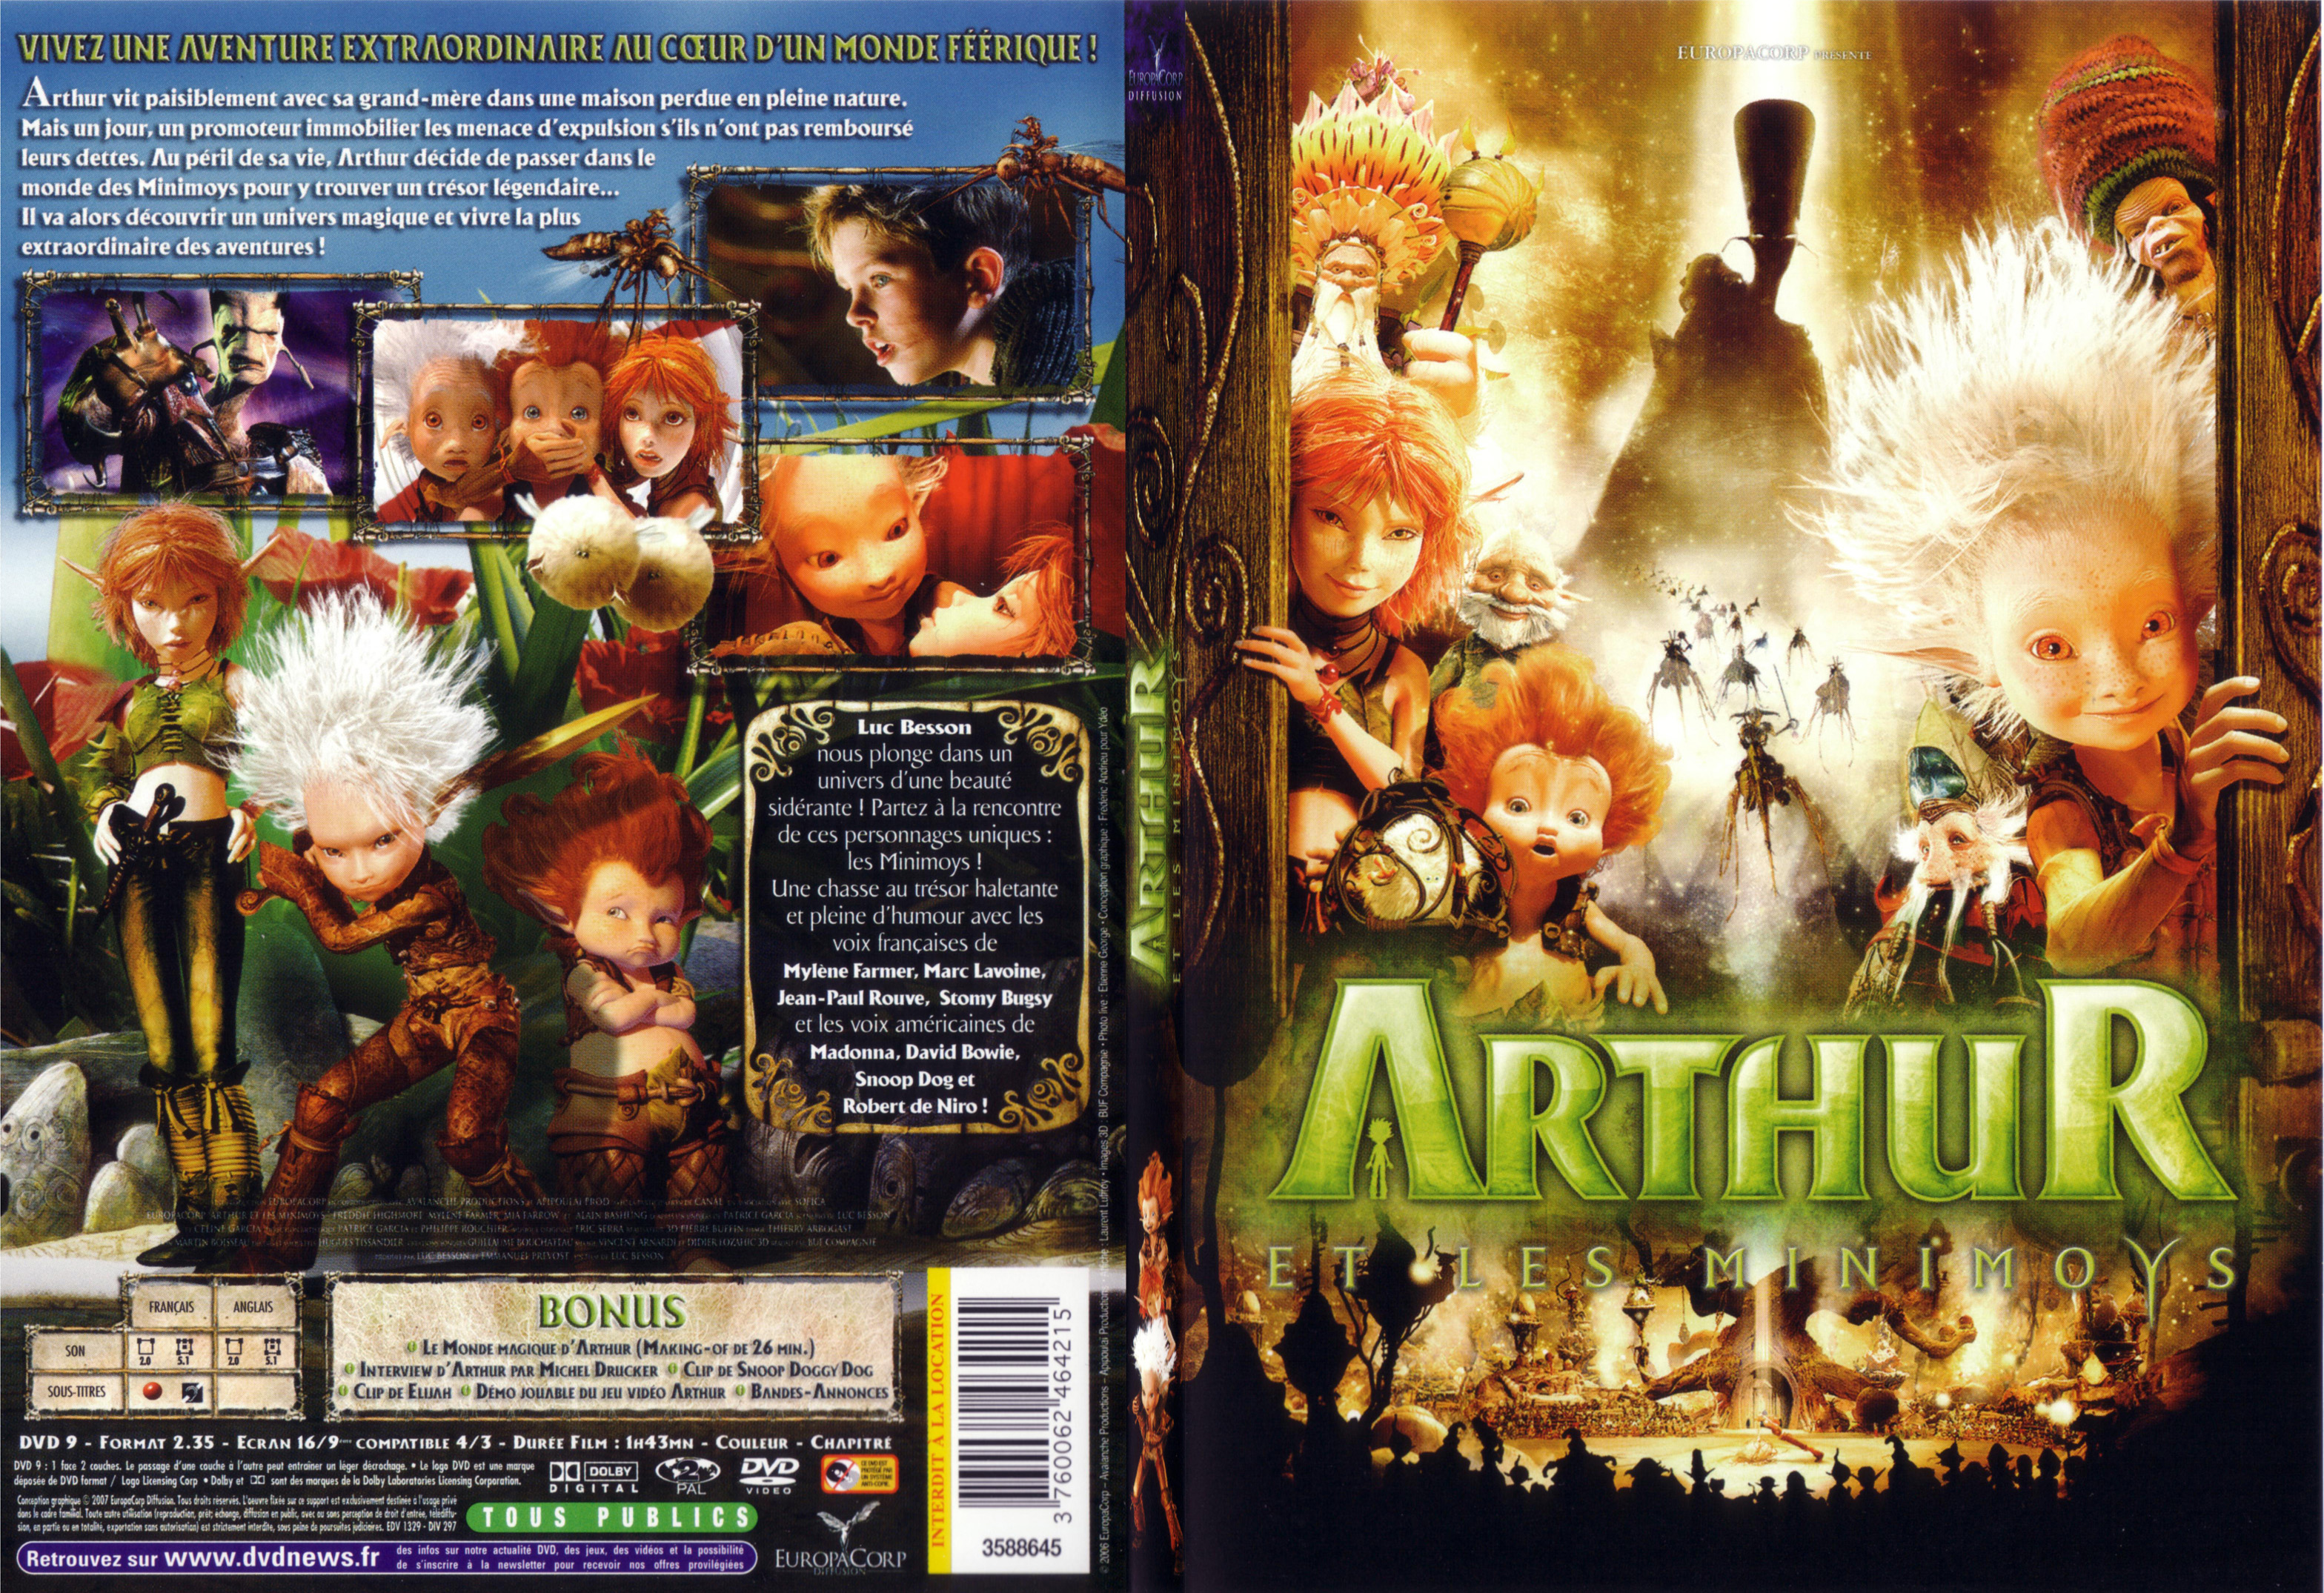 Jaquette DVD Arthur et les minimoys - SLIM v2